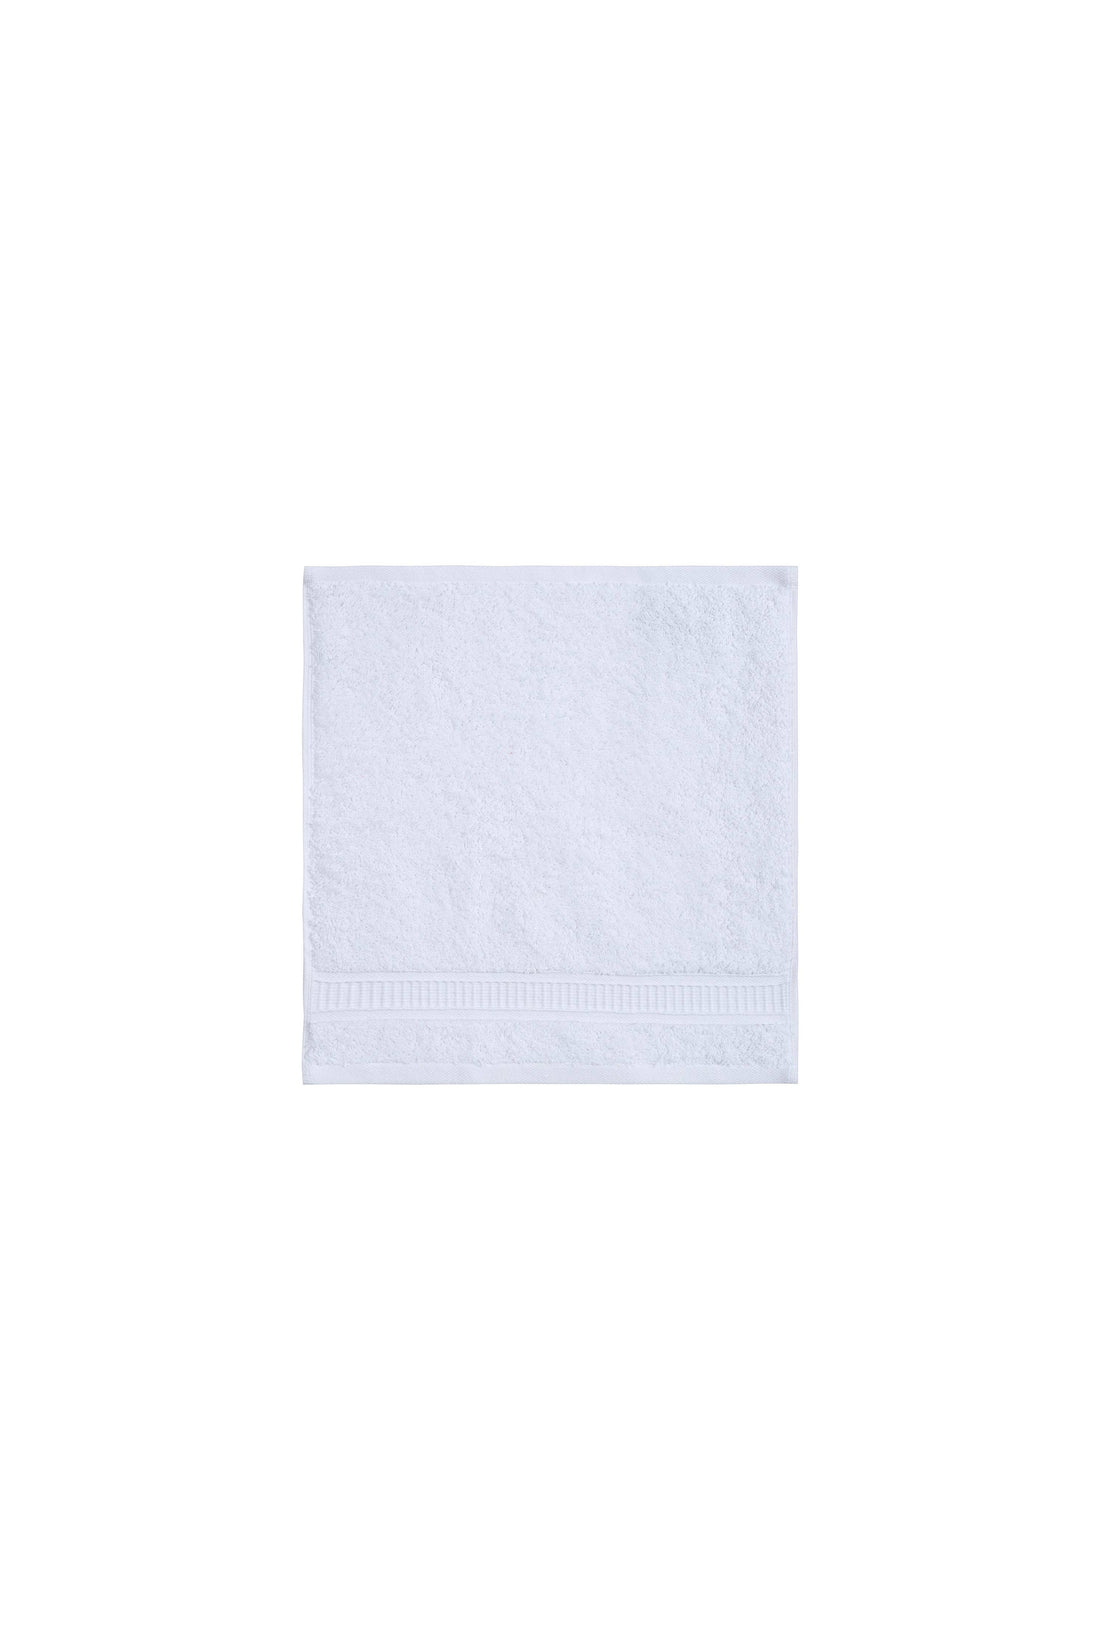 Hotels White Washcloth   Turkish Genuine Cotton